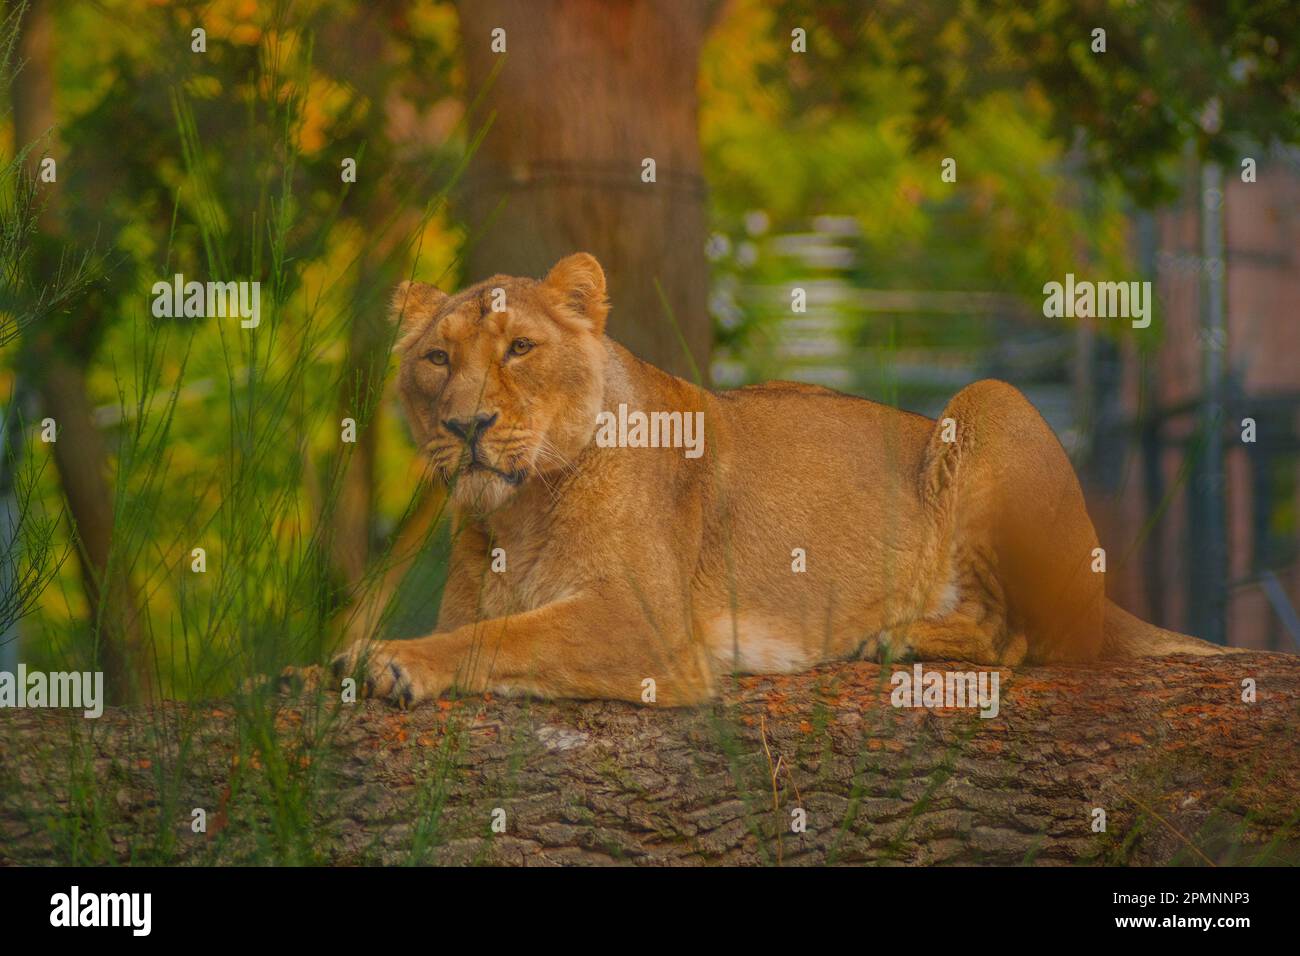 Löwin auf Baumstamm Stock Photo